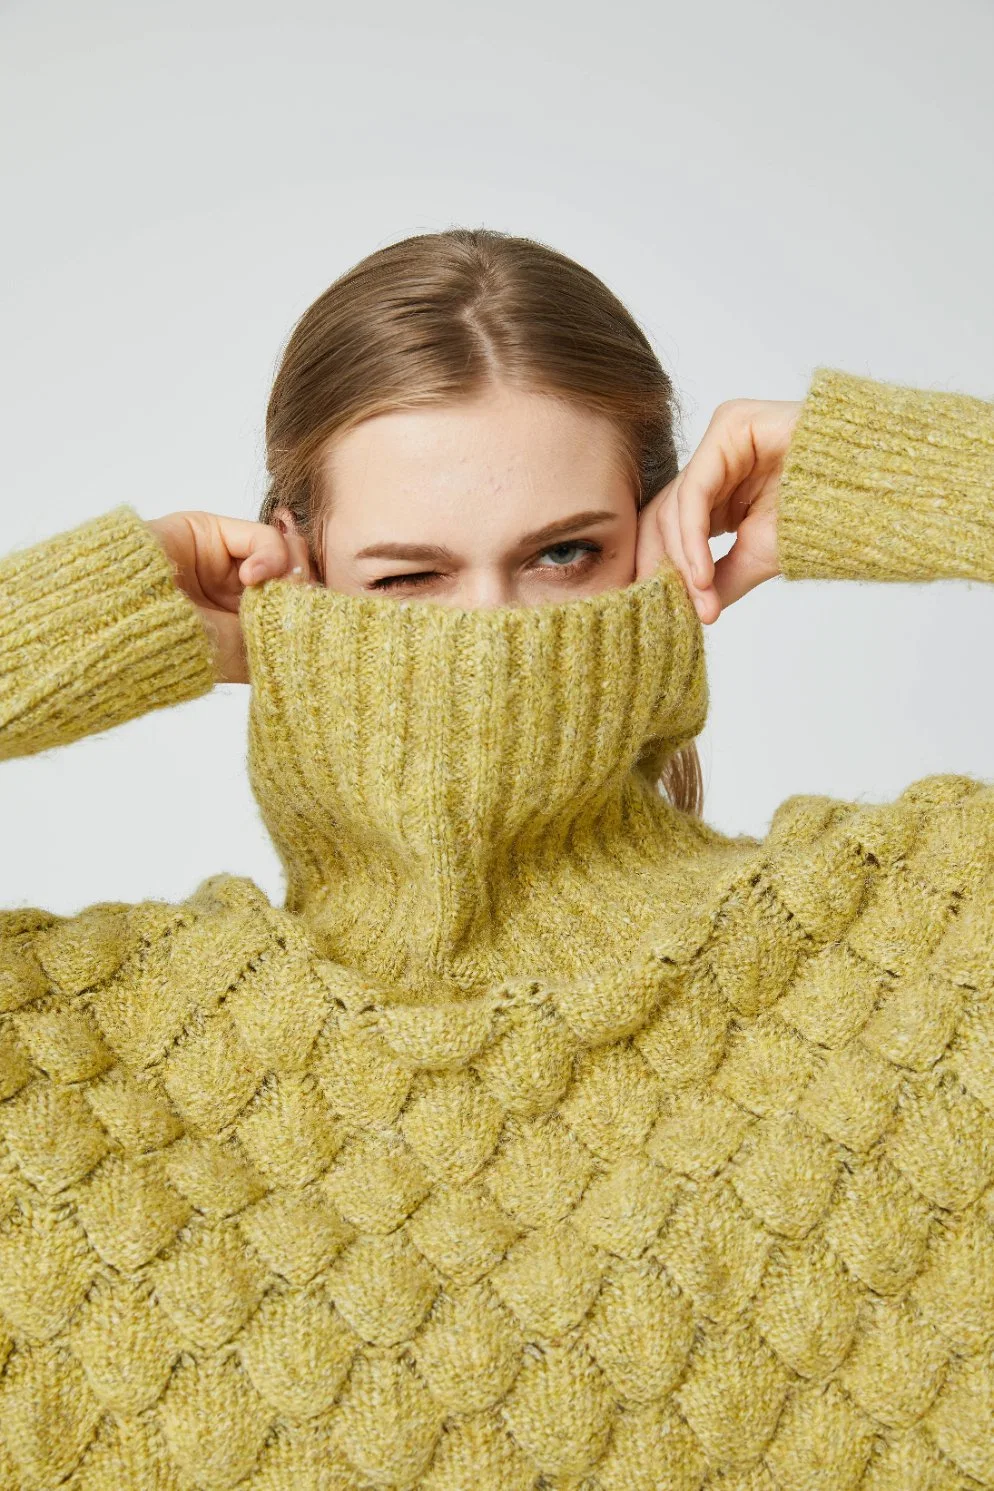 Nuevo estilo de diseño de moda señoras con escamas de pescado Sweater tejidos Otoño/Invierno Turtleneck grueso suéter para las mujeres